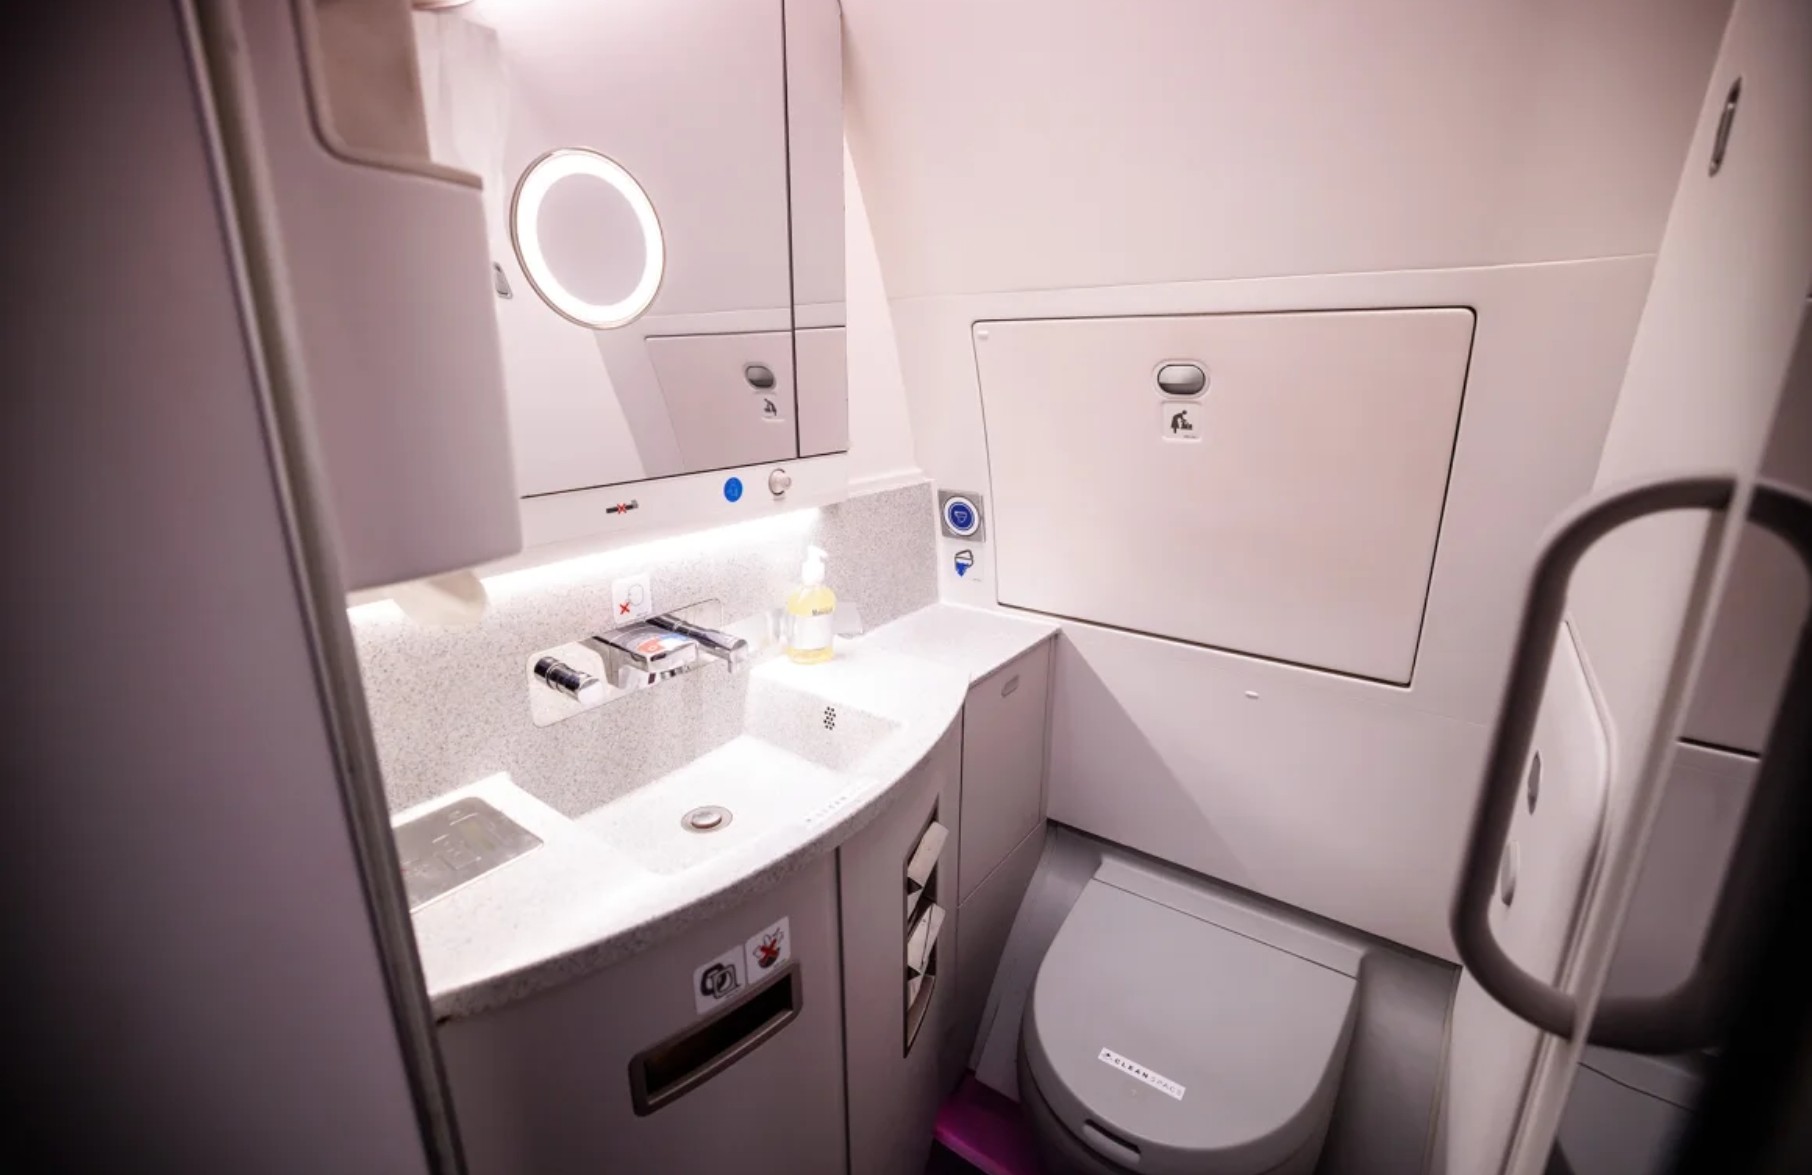 Nhà vệ sinh trên máy bay hoạt động như thế nào ở độ cao 10.000m?- Ảnh 1.